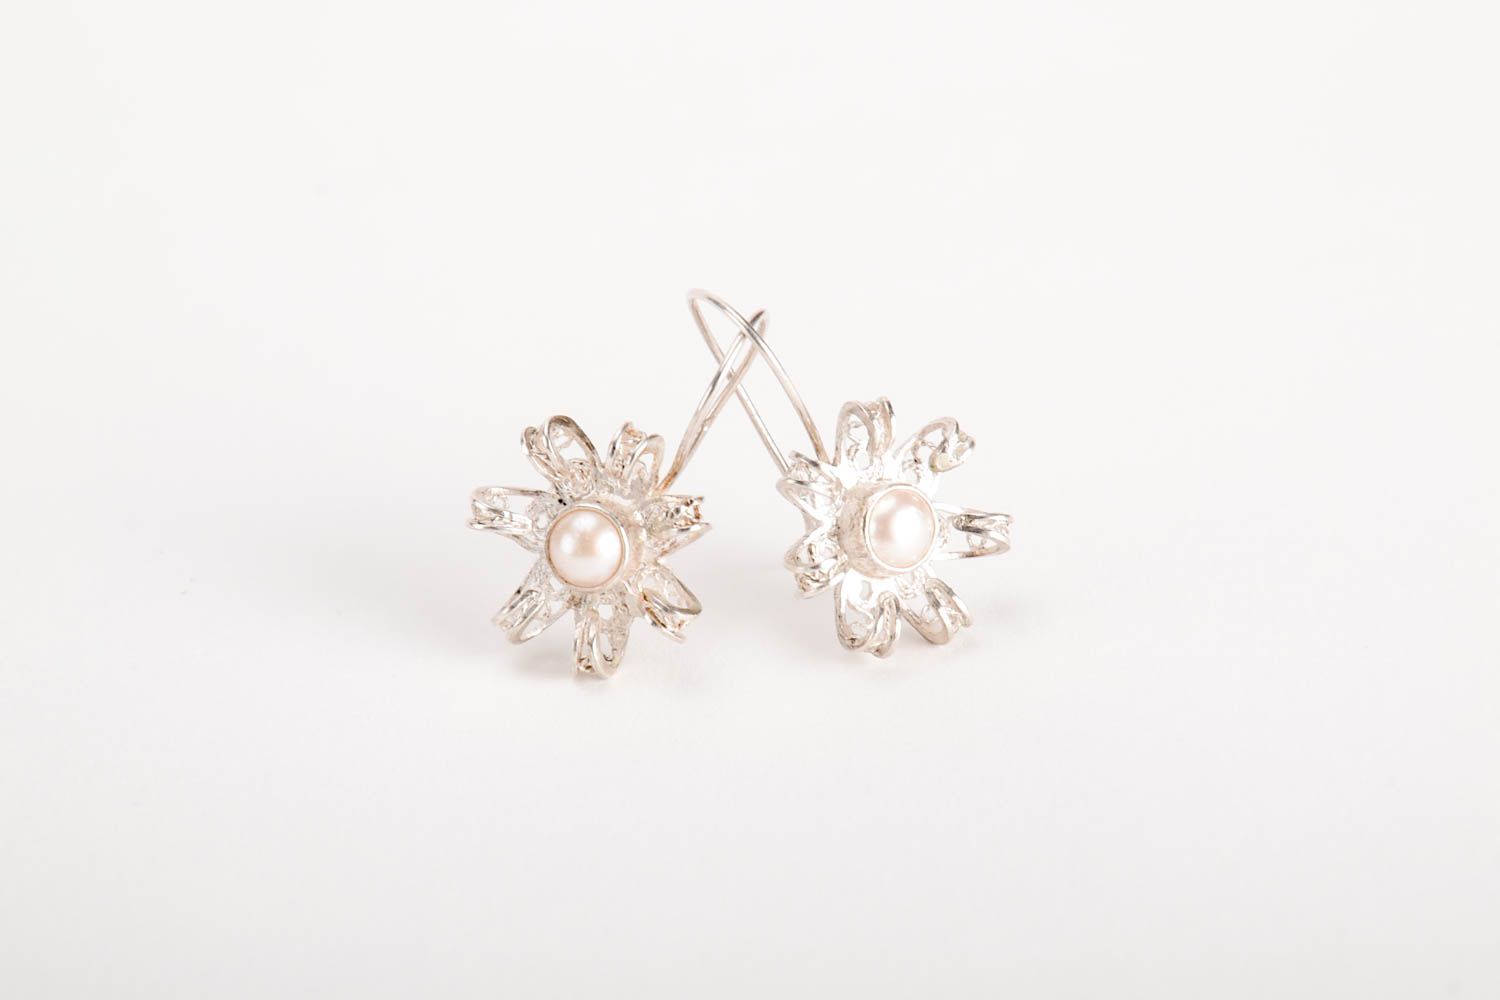 Handmade silver earrings designer earrings unusual gift for women silver jewelry photo 4